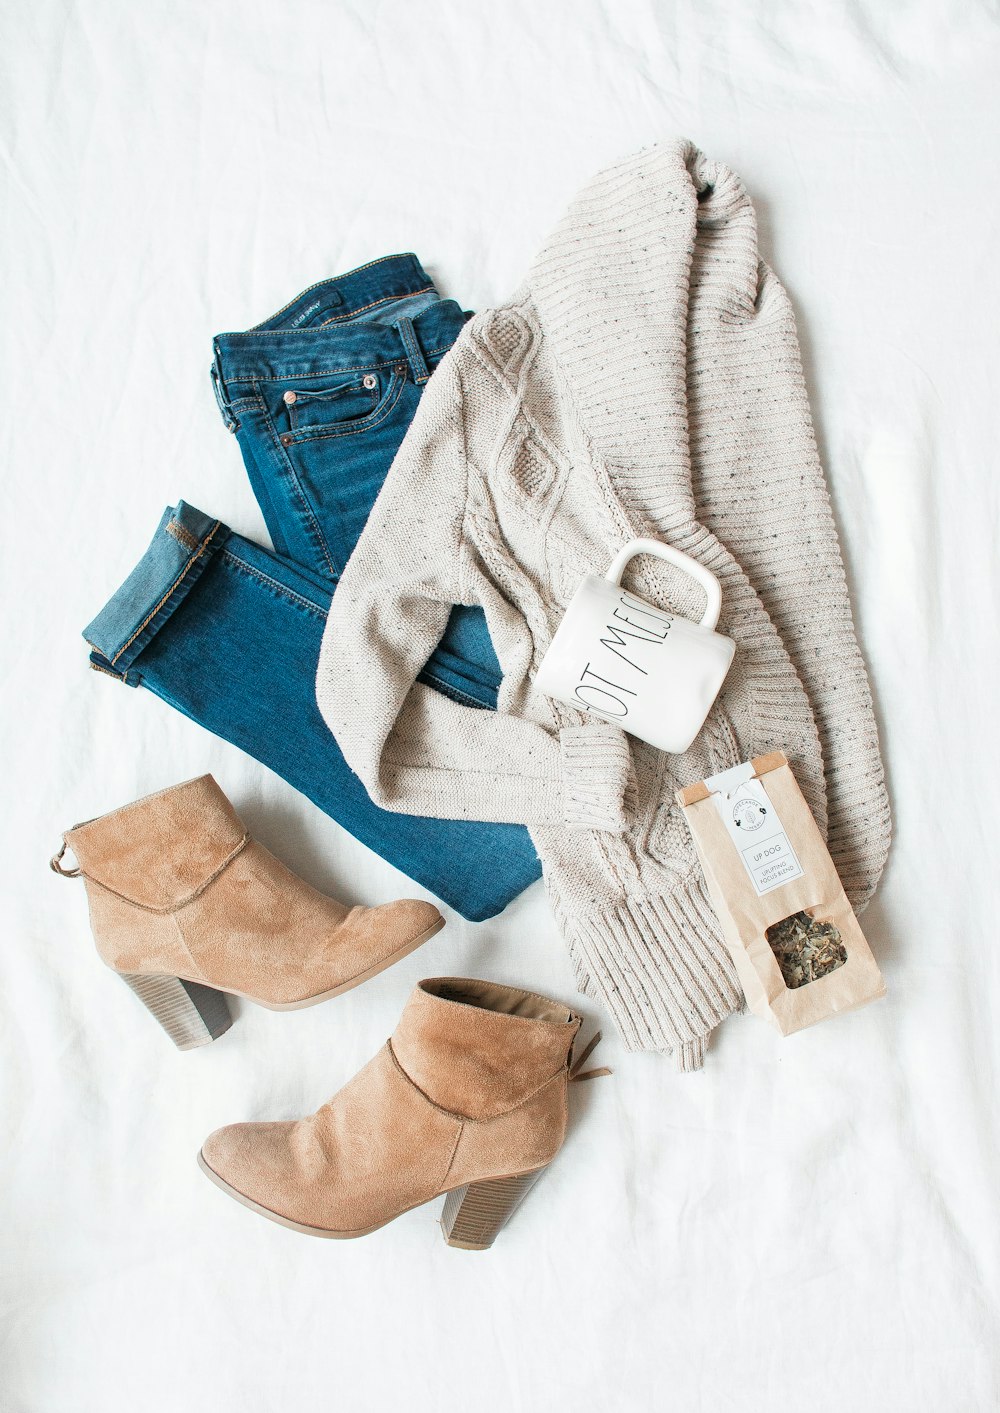 graue Strickjacke, blaue Jeans und ein Paar braune Schuhe mit klobigen Absätzen